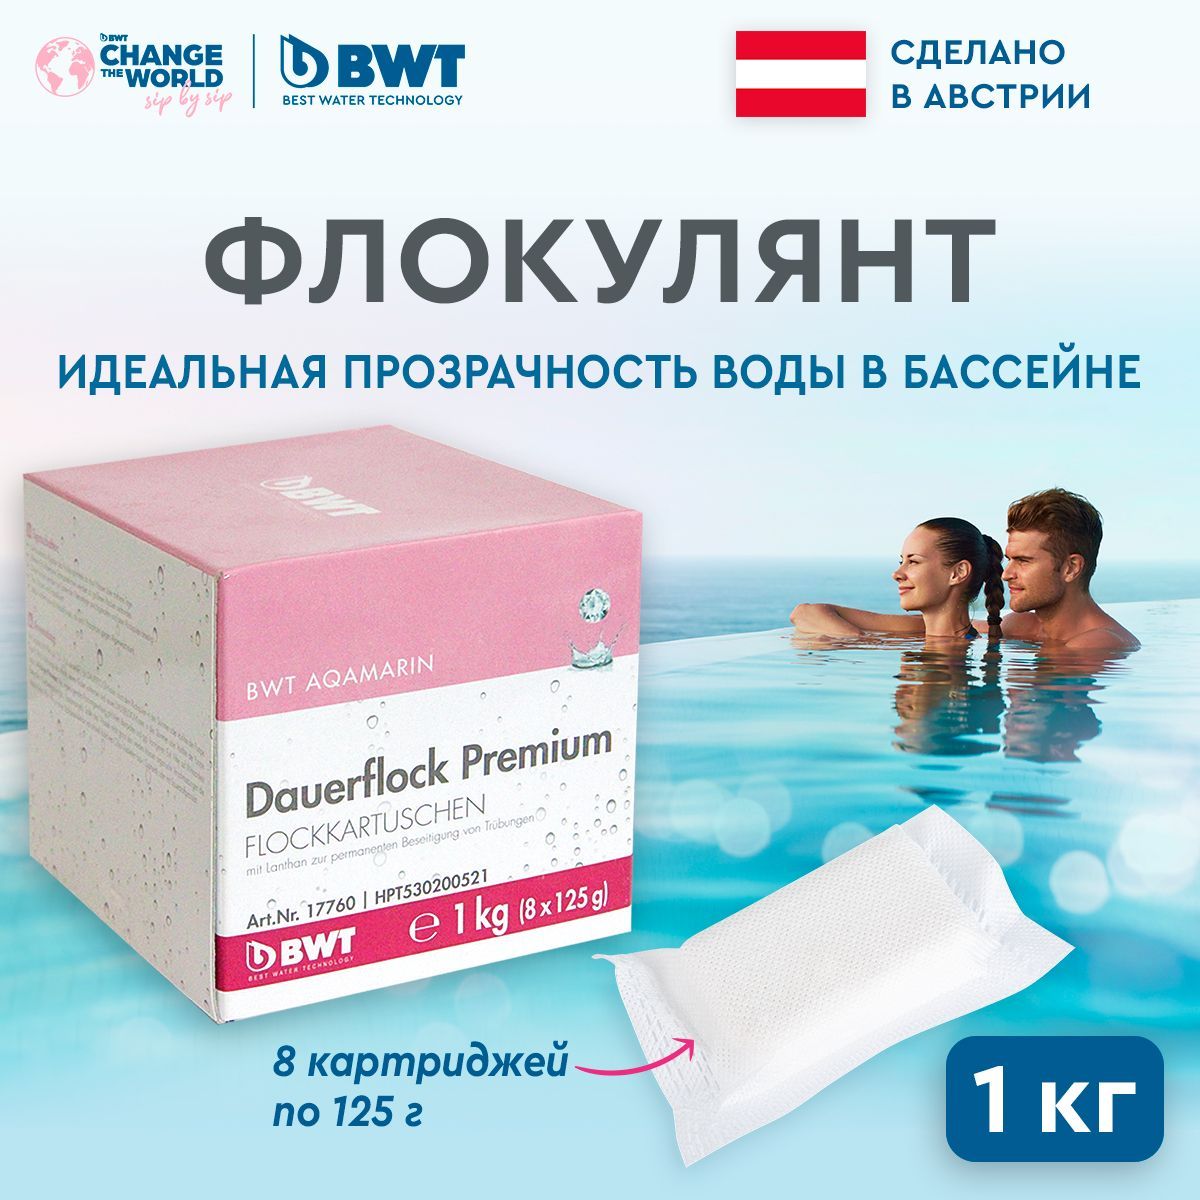 Средство для очистки воды в бассейне BWT Dauerflock Premium, 8 штук по 125 г